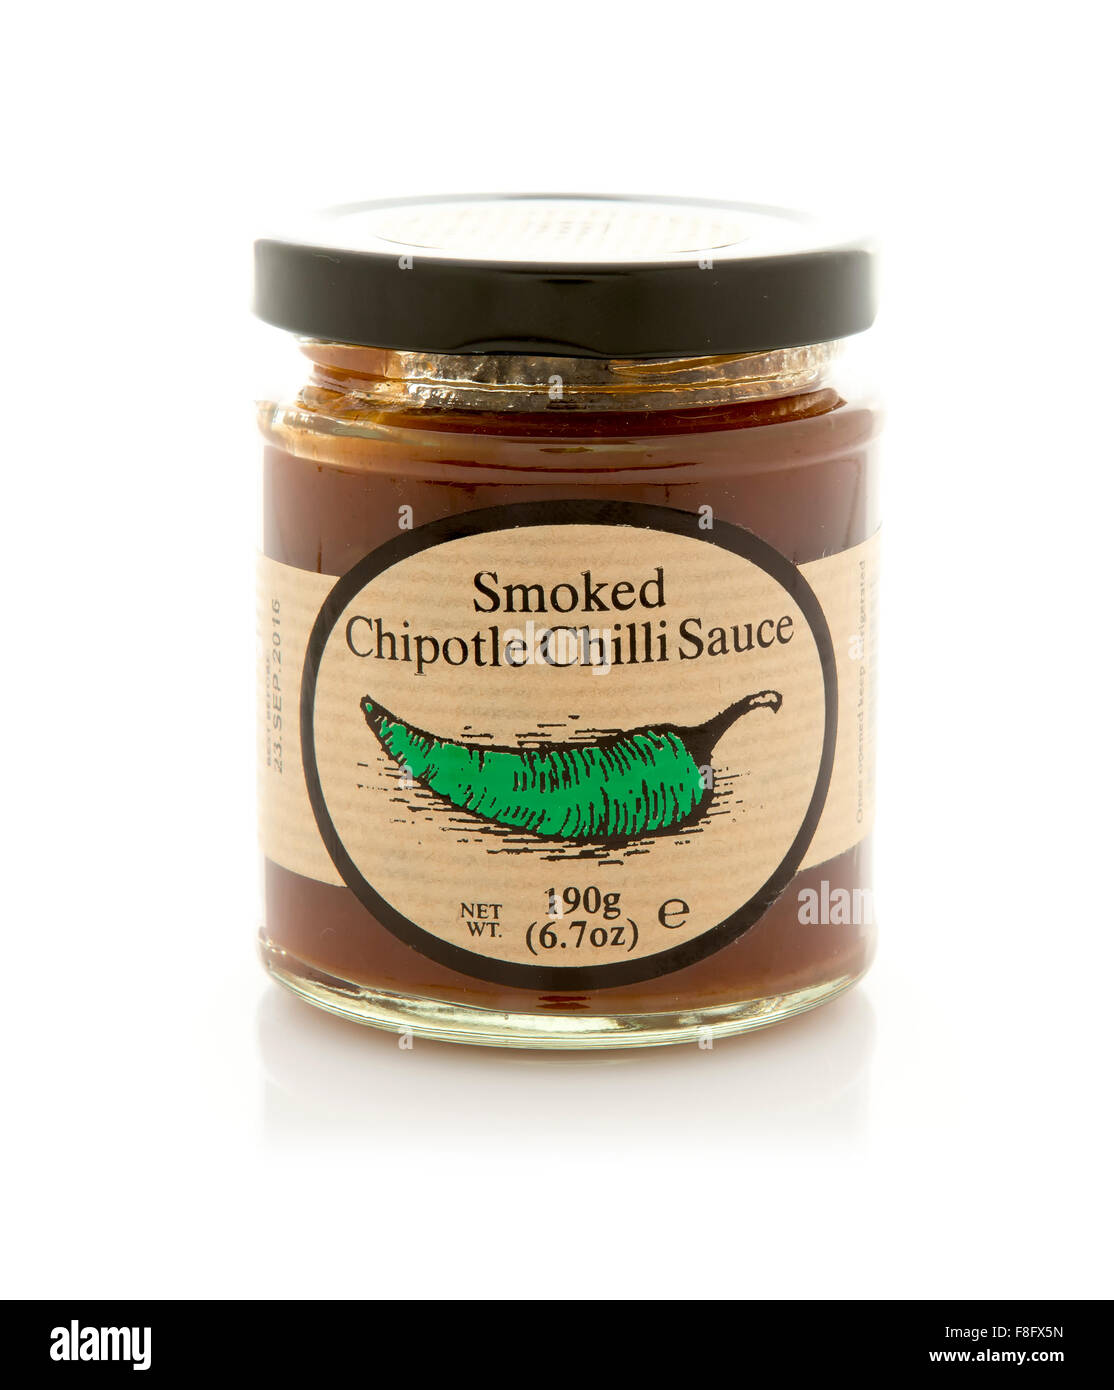 Edinburgh bewahrt geräucherter Chipotle Chili Sauce auf weißem Hintergrund Stockfoto